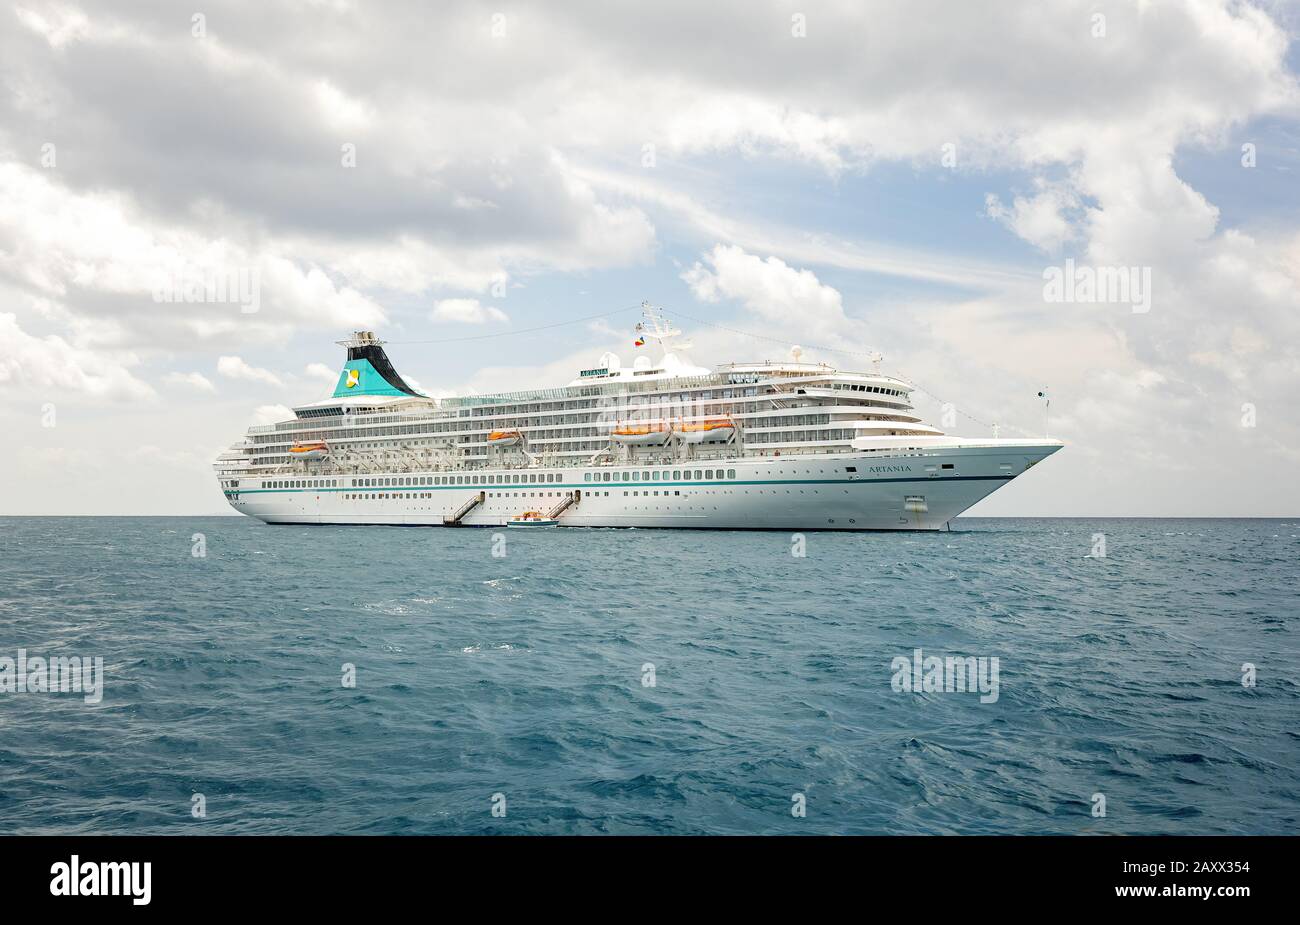 République des Seychelles / Praslin - 04 février 2020: ARTANIA (navire à passagers) en mer ouverte - Océan Indien Banque D'Images